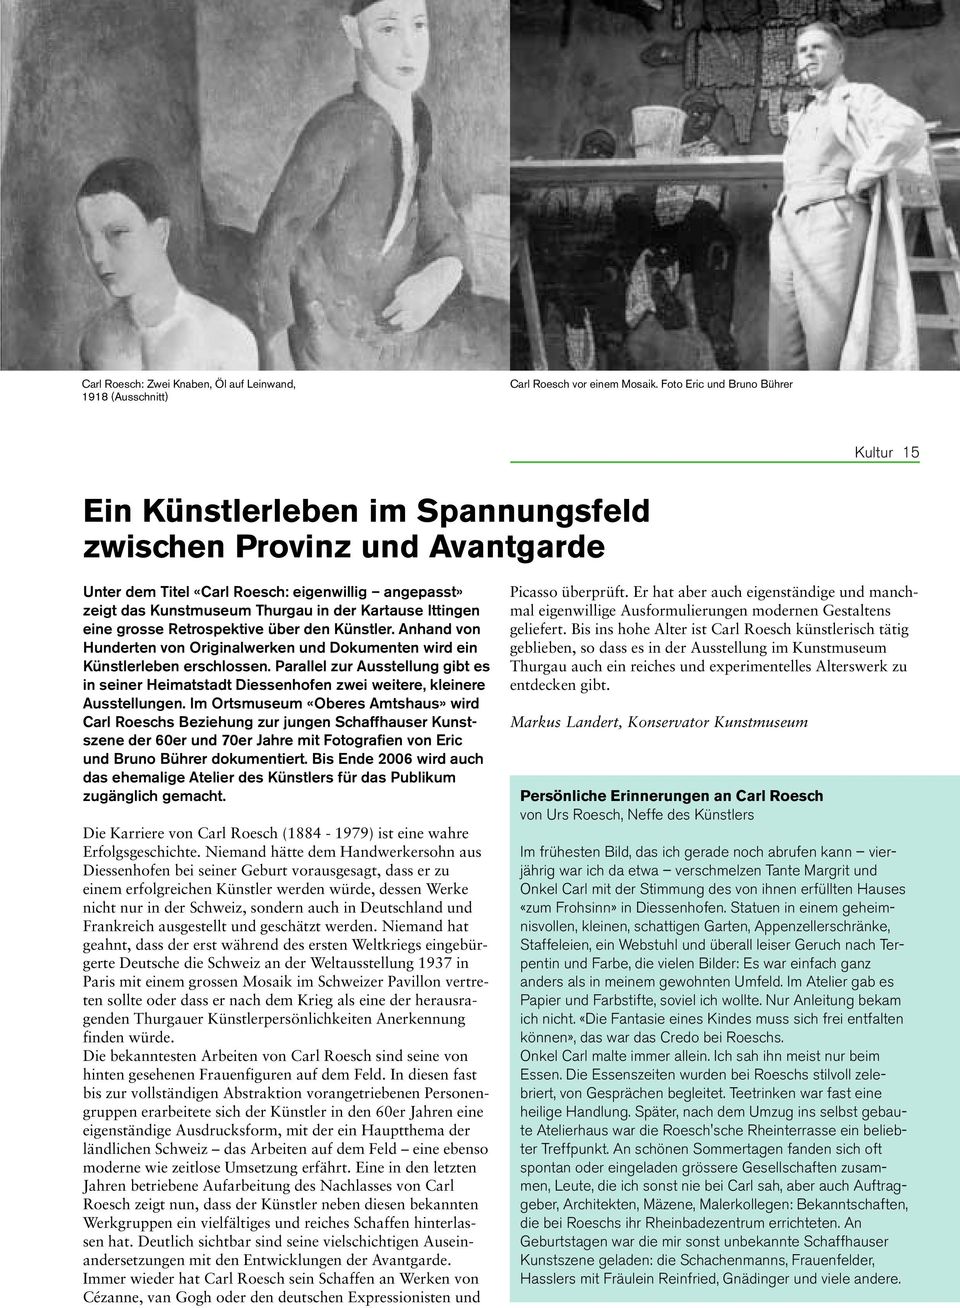 Kartause Ittingen eine grosse Retrospektive über den Künstler. Anhand von Hunderten von Originalwerken und Dokumenten wird ein Künstlerleben erschlossen.